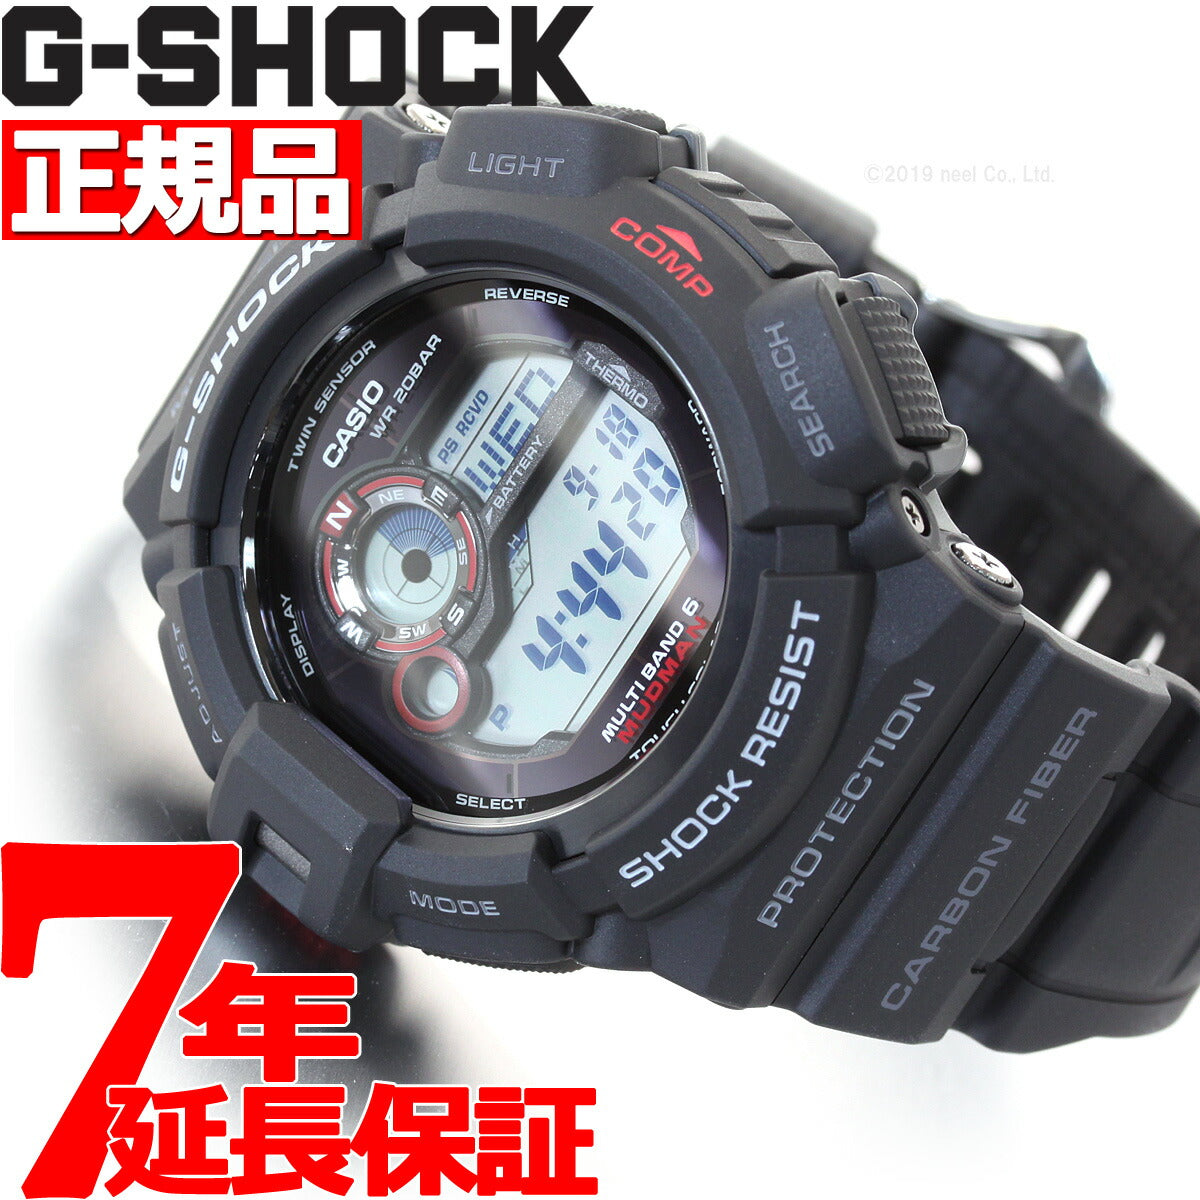 G-SHOCK 限定カラー マッドマン GW-9300ER-5JF タフソーラー